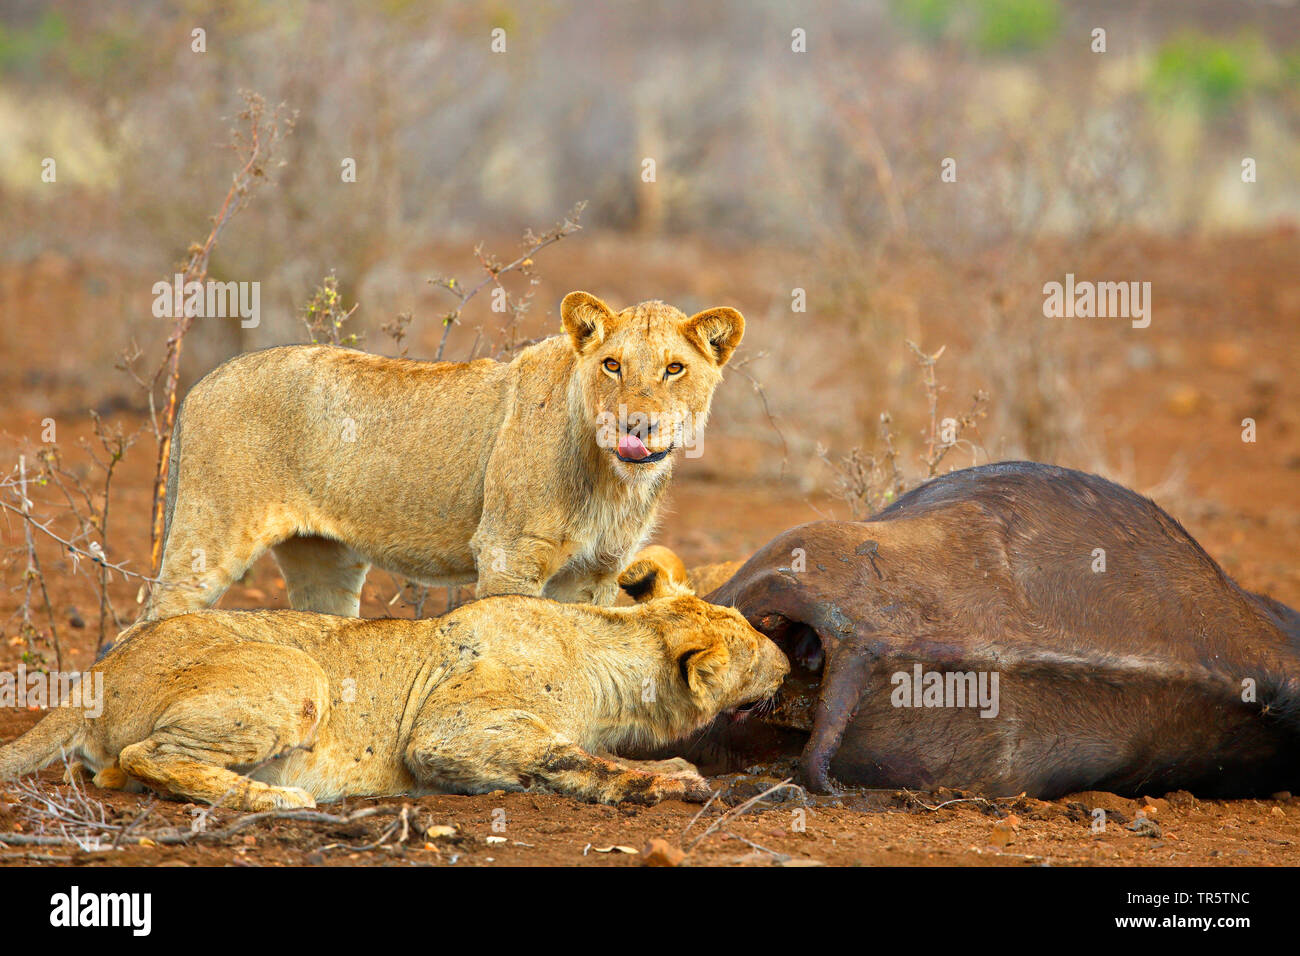 León (Panthera leo), los jóvenes se alimentan de animales muertos, búfalo, Mpumalanga, Sudáfrica Parque Nacional Kruger Foto de stock